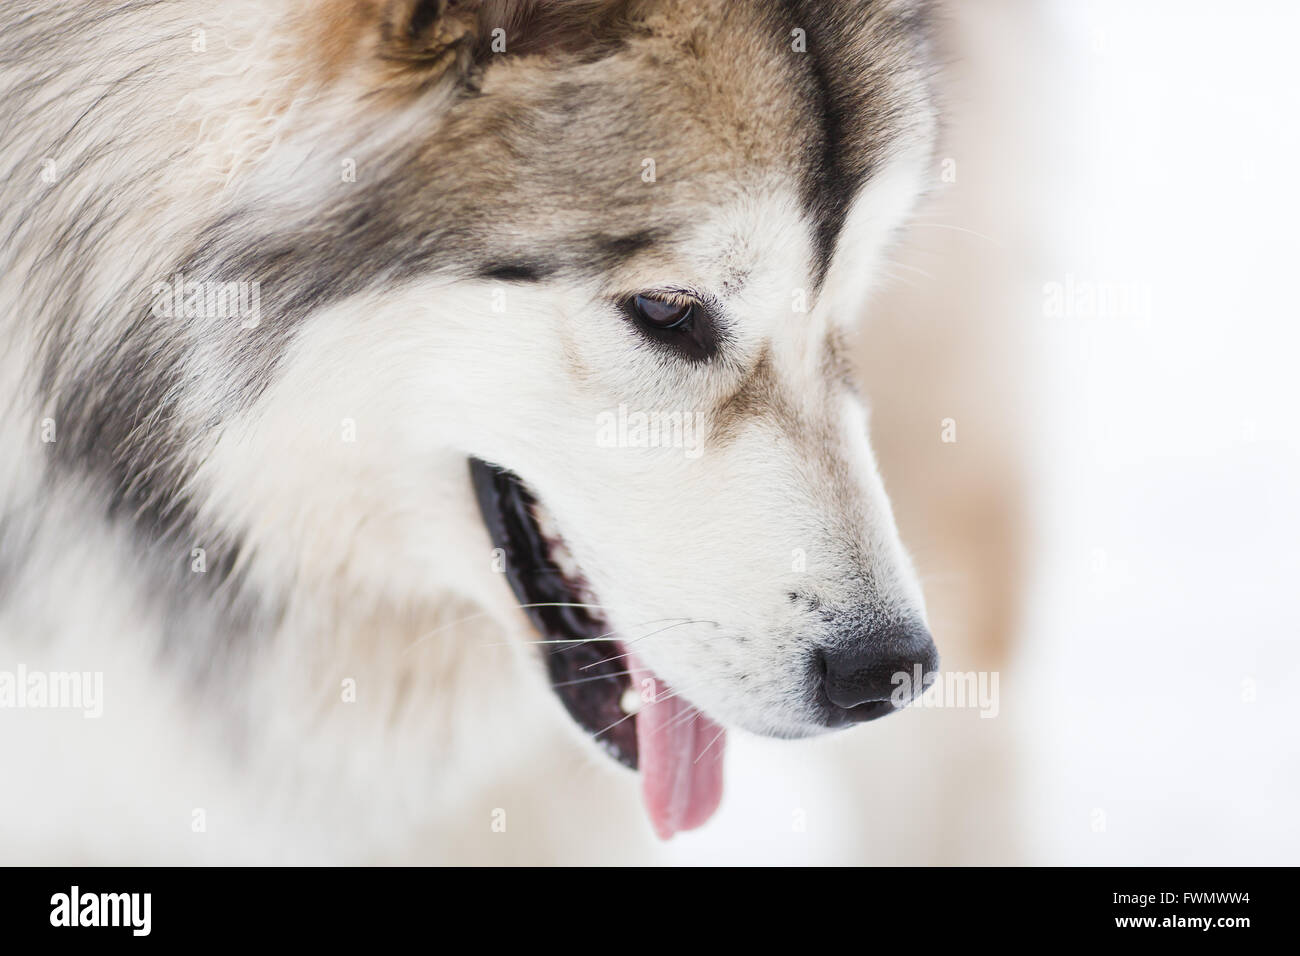 Il cane di malamute su sfondo bianco in inverno Foto Stock